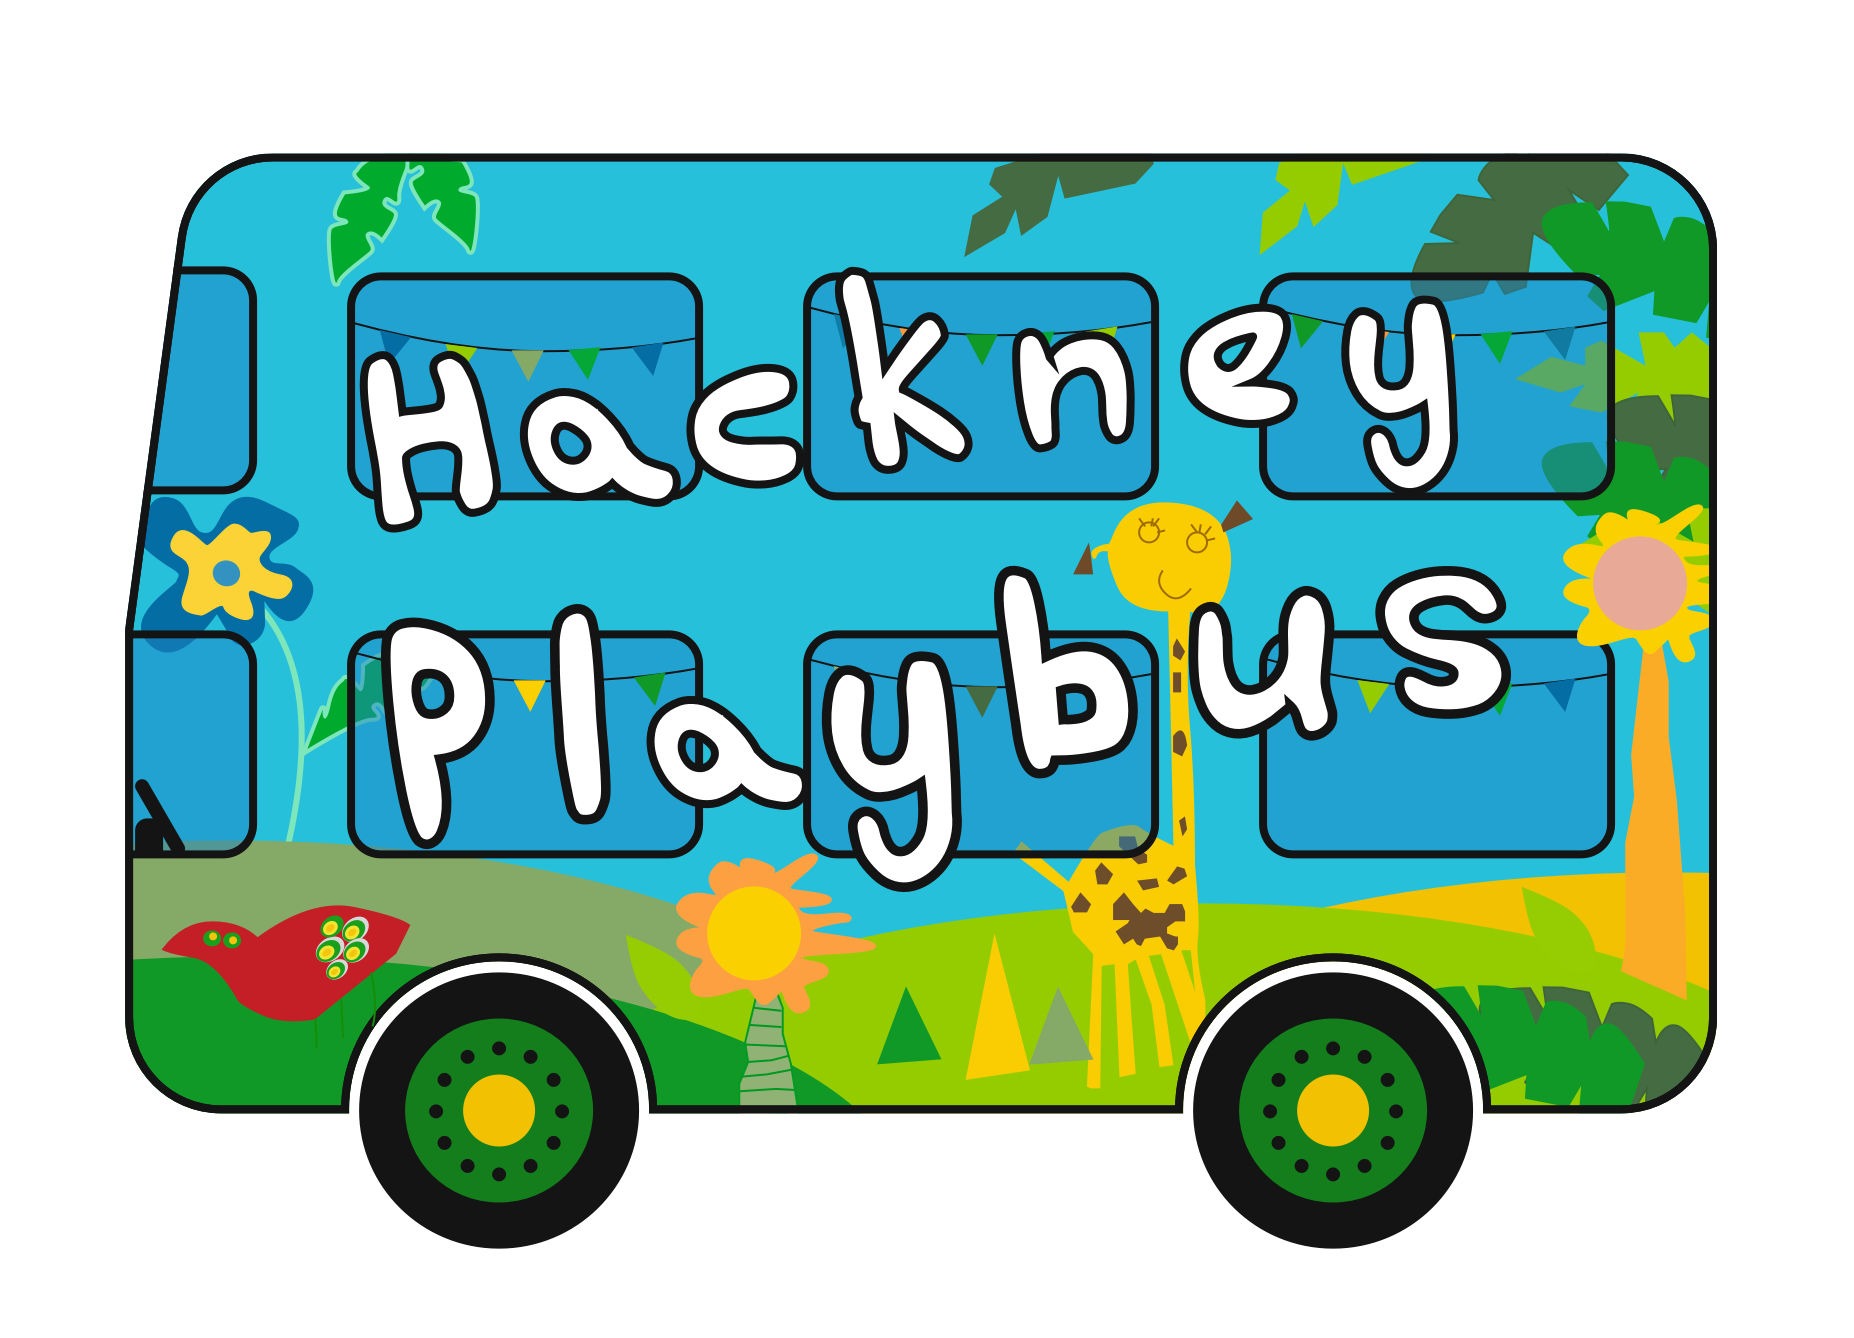 Hackney Playbus